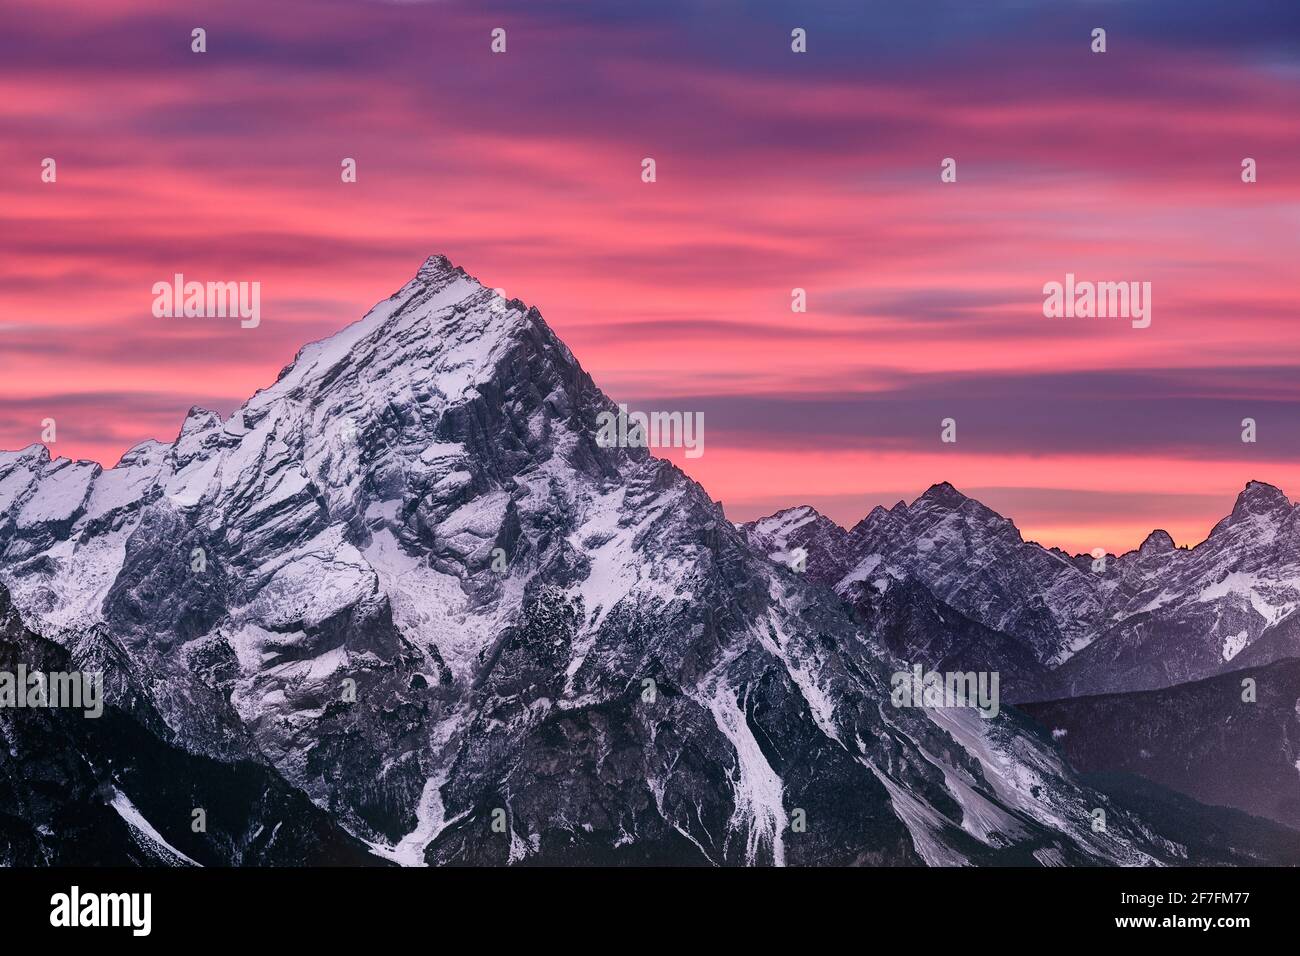 Tramonto rosa sul monte Antelao in inverno con neve, Dolomiti, Trentino-Alto Adige, Italia, Europa Foto Stock